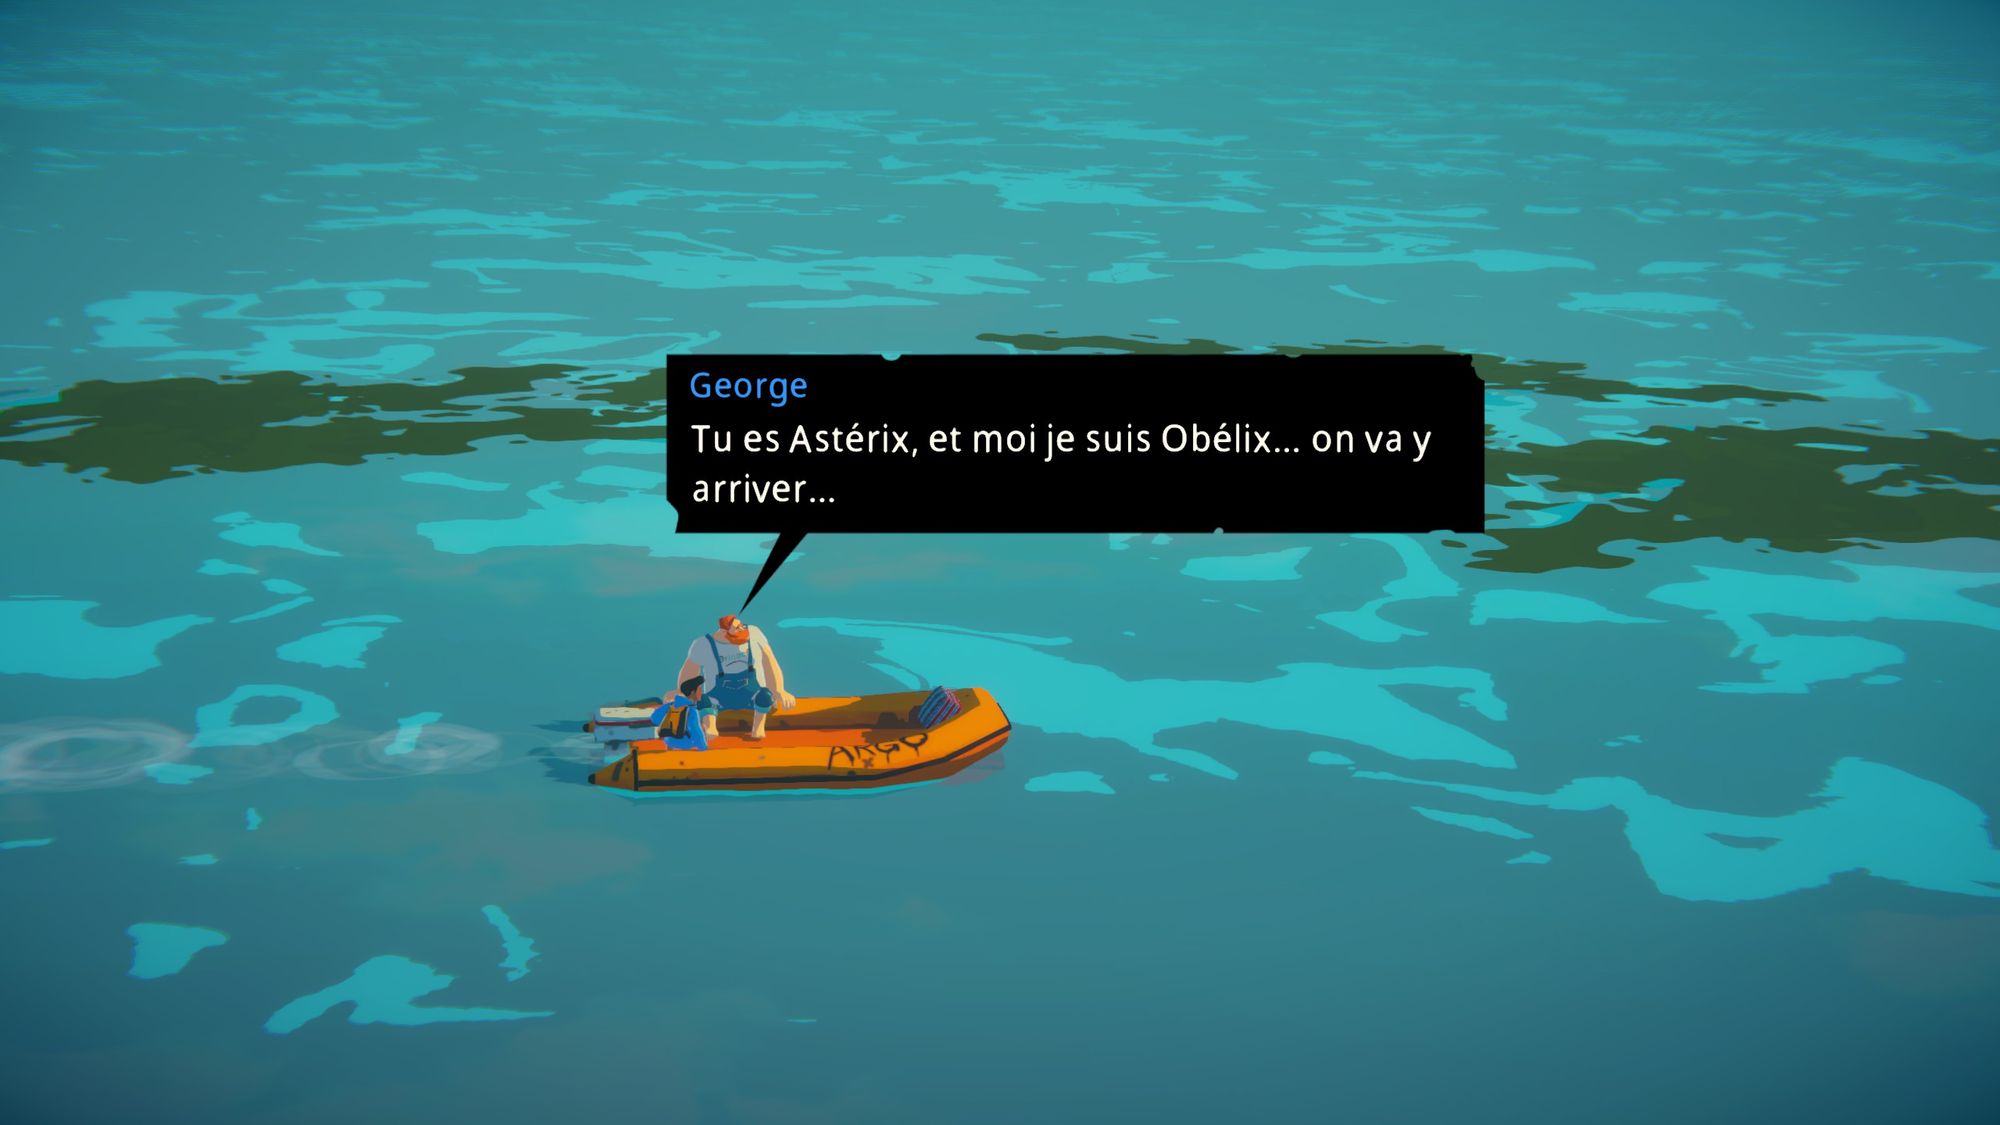 Un personnage se compare à Oblémix penddant un voyage en bateau sur des eaux polluées